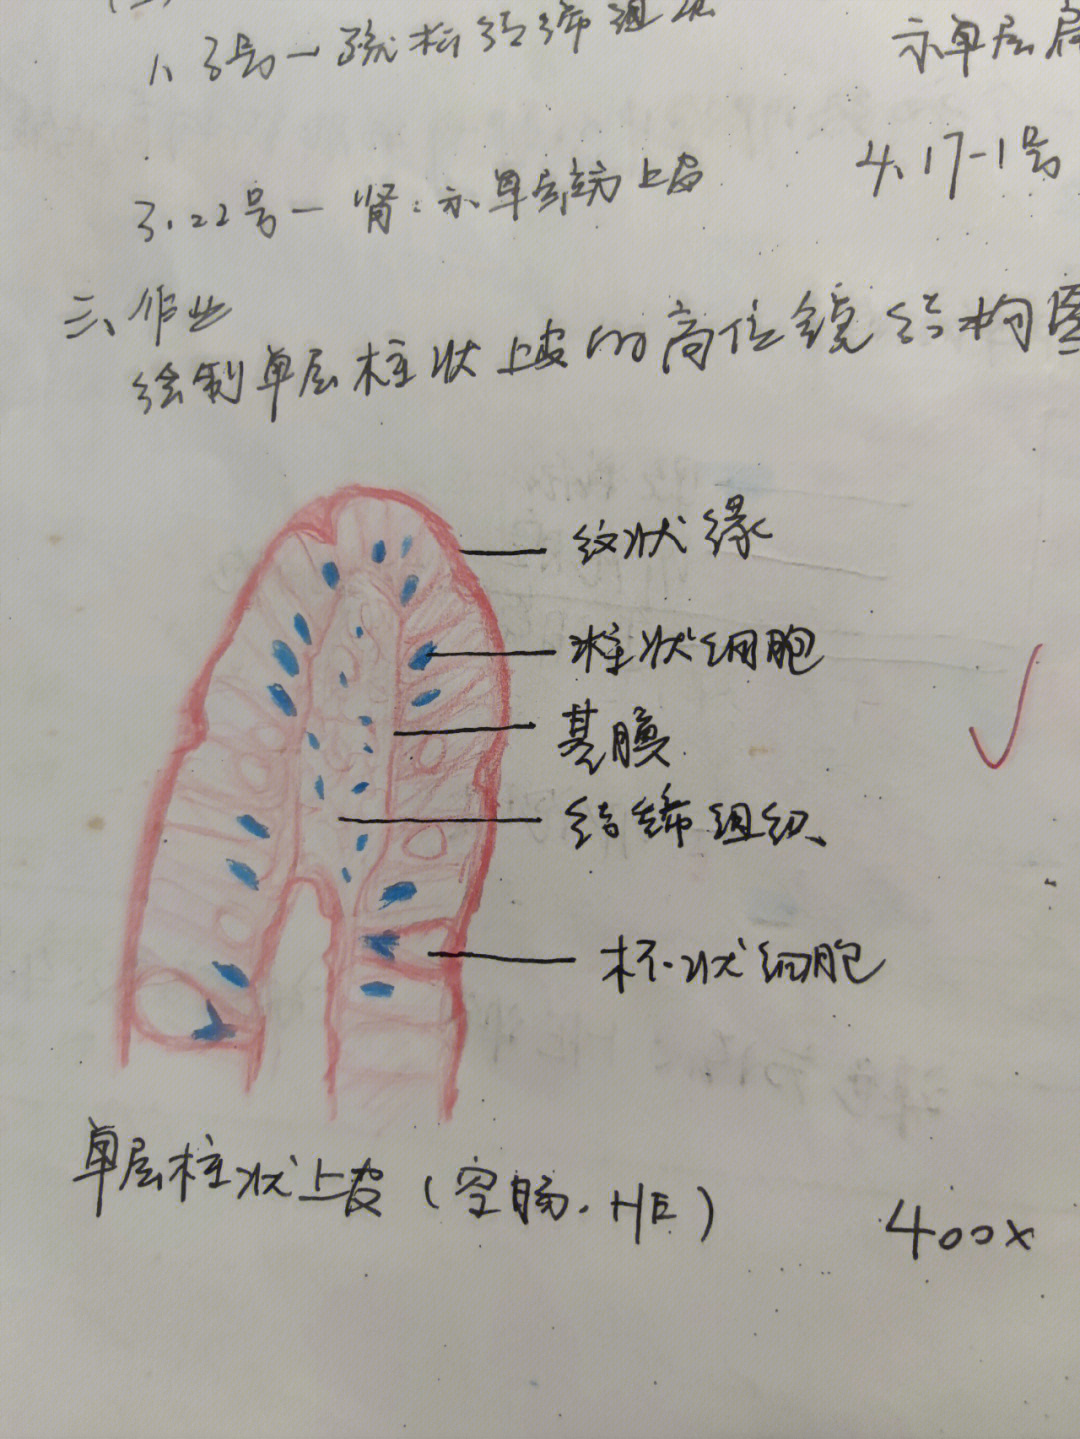 组胚胆囊绘图图片